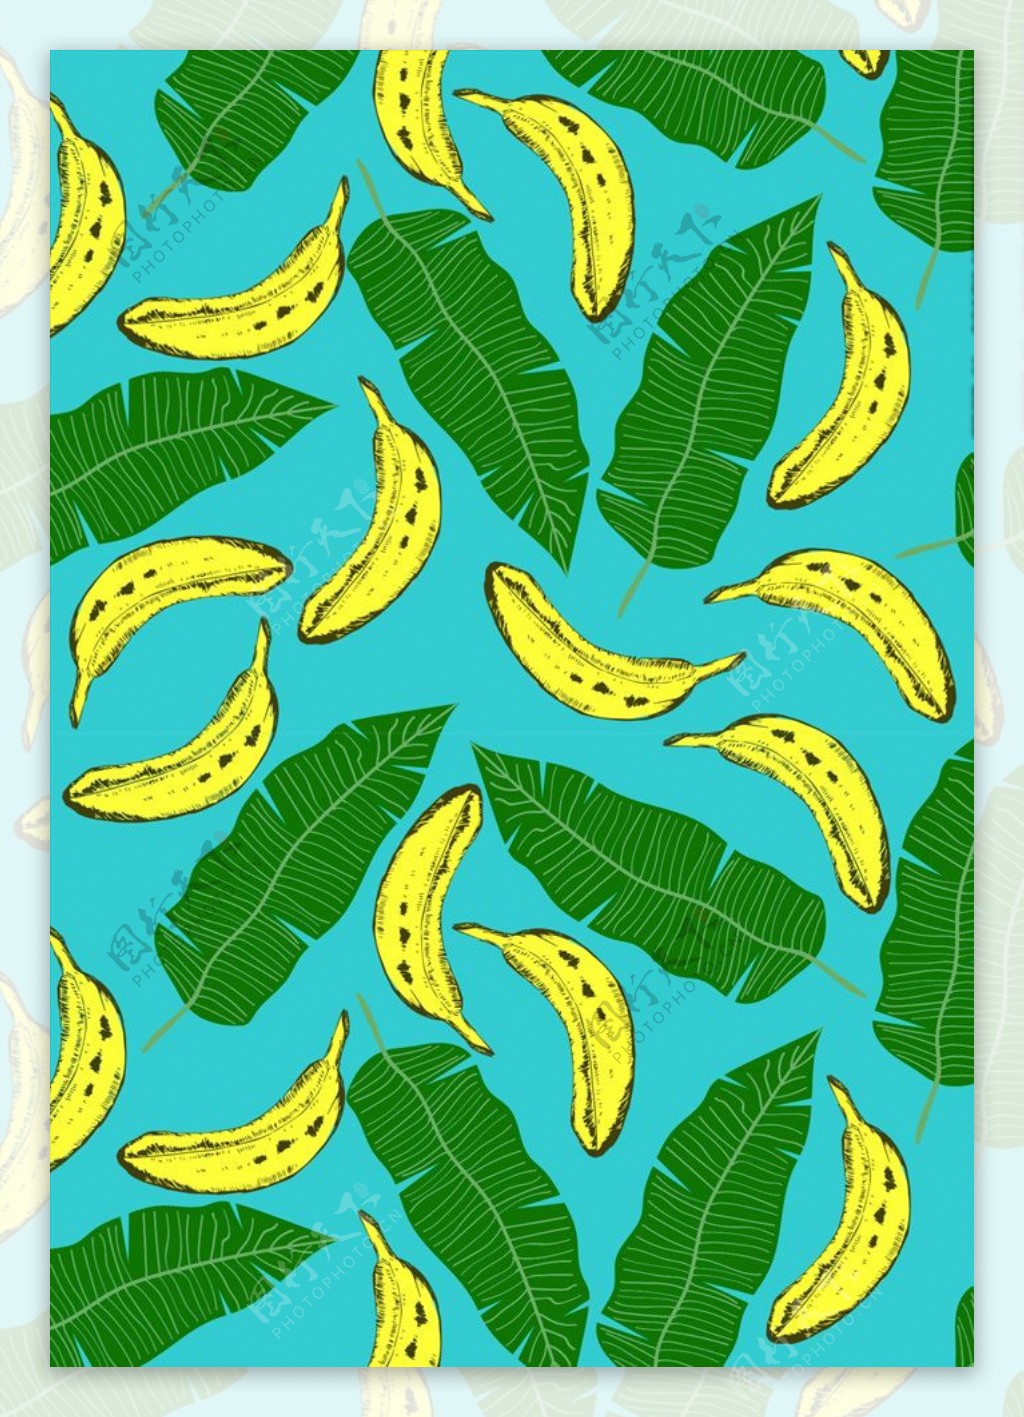 水果素材下载香蕉图案下载